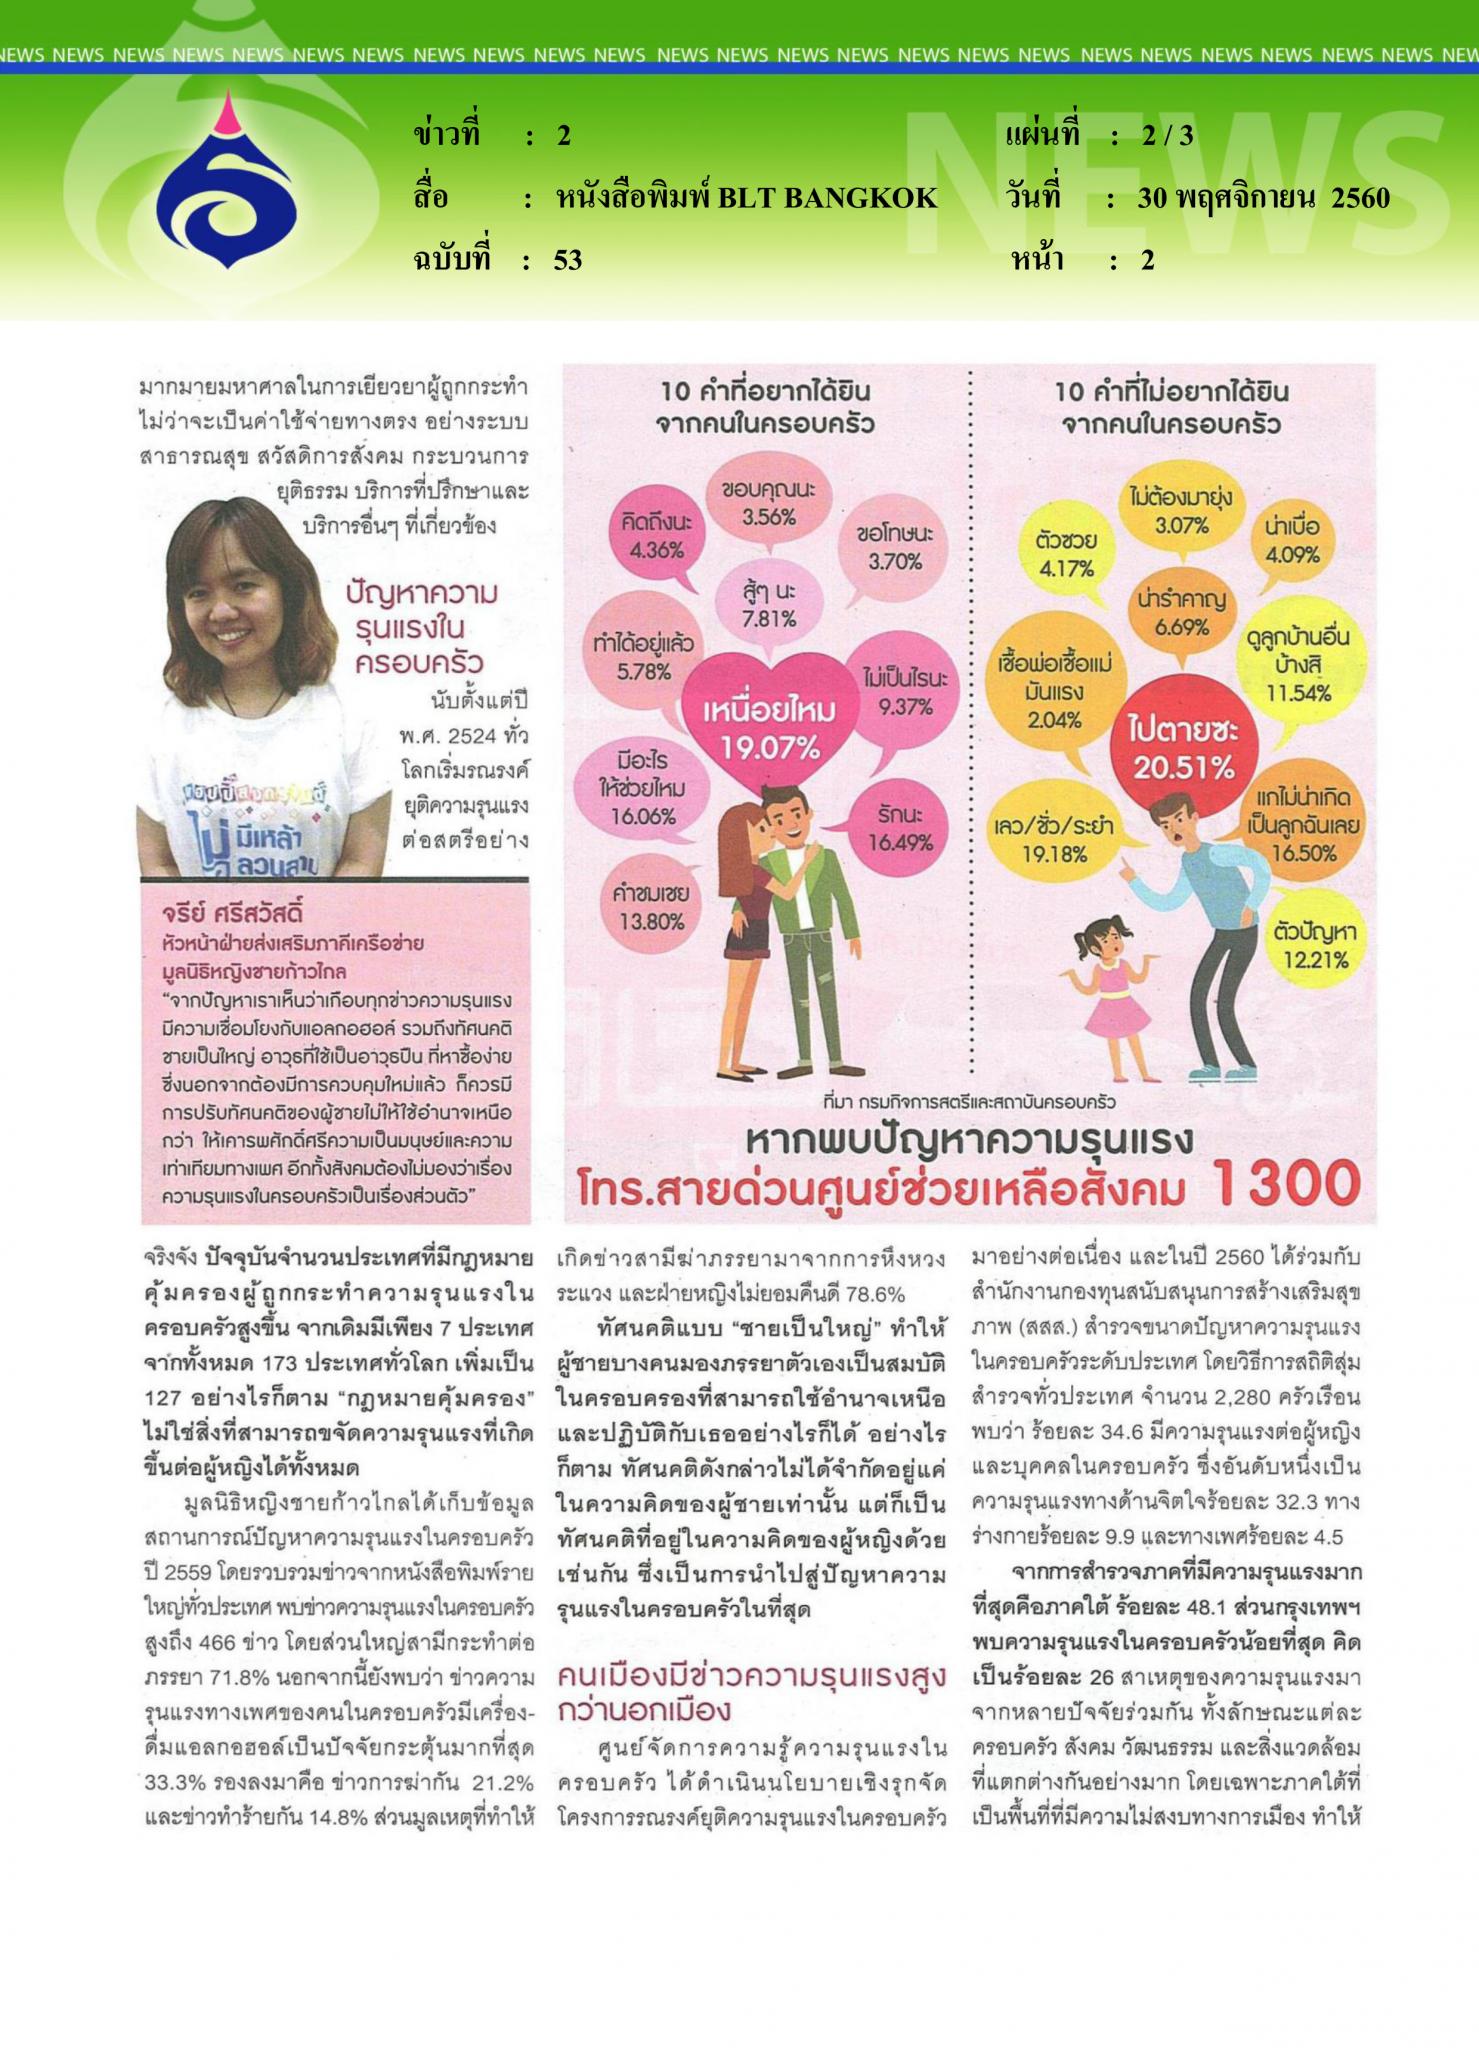 หนังสือพิมพ์BLT BANGKOK, ความรุนแรงทางเพศ ปัญหาระดับชาติ